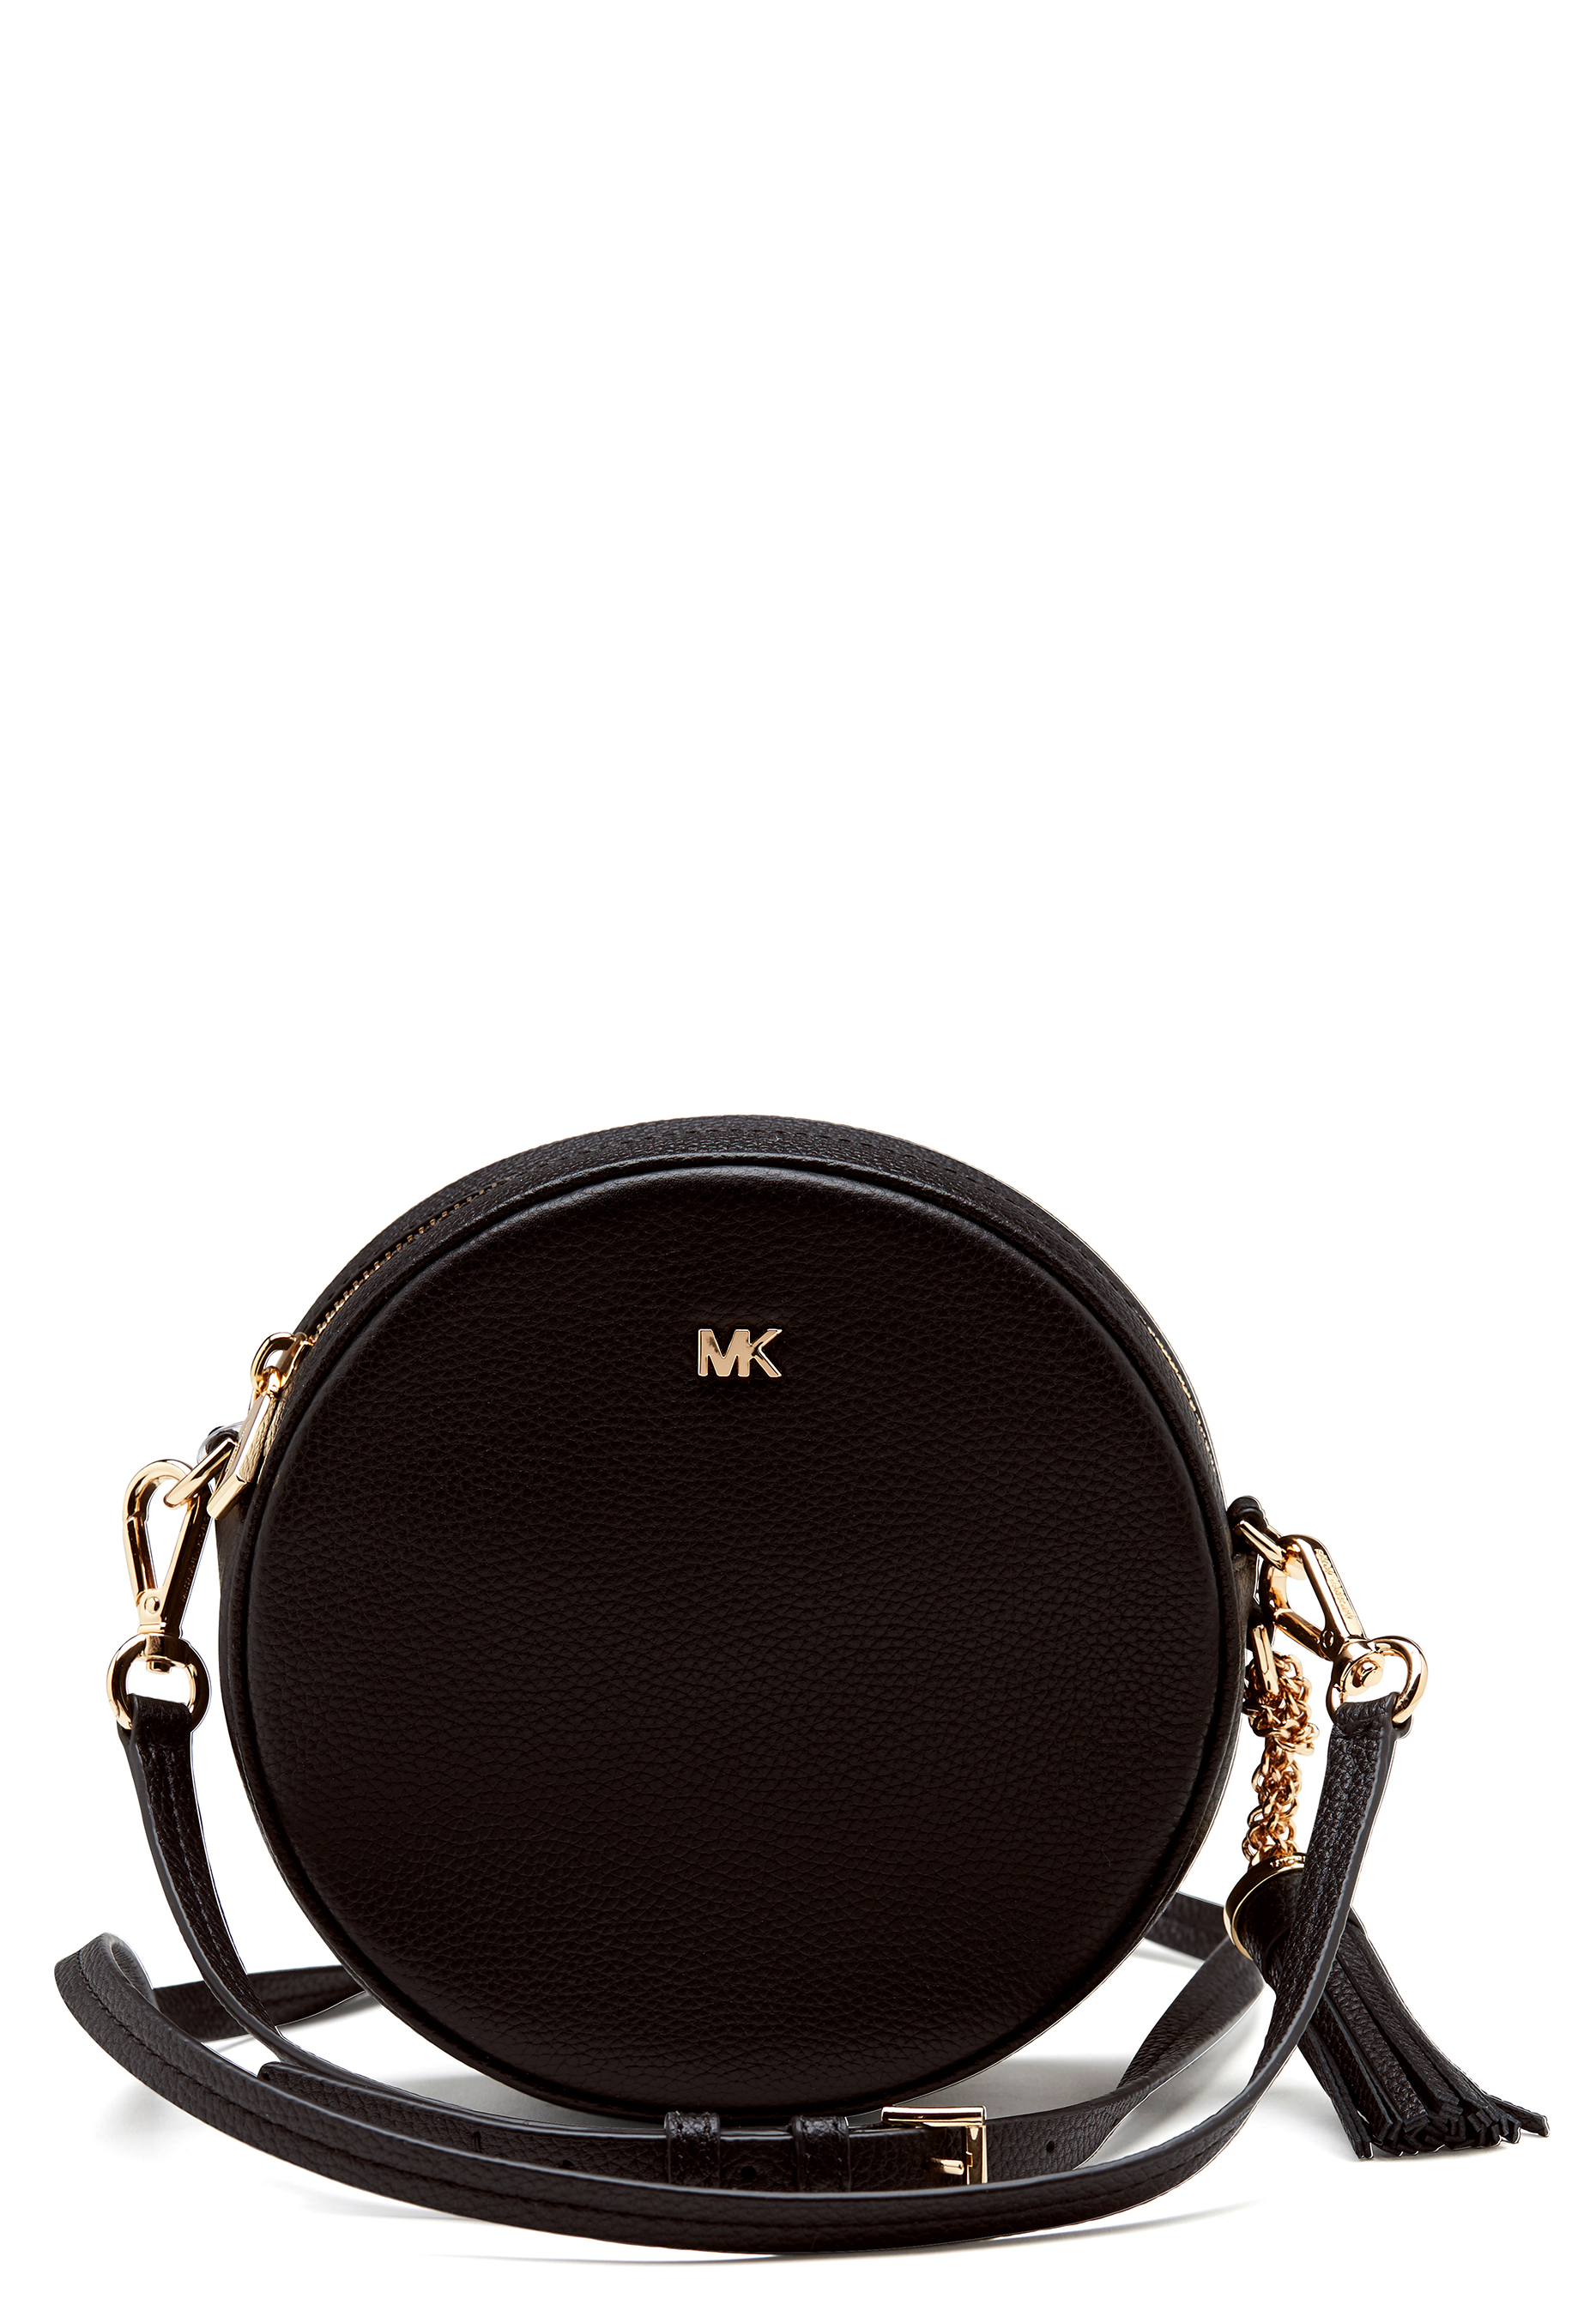 mk round purse